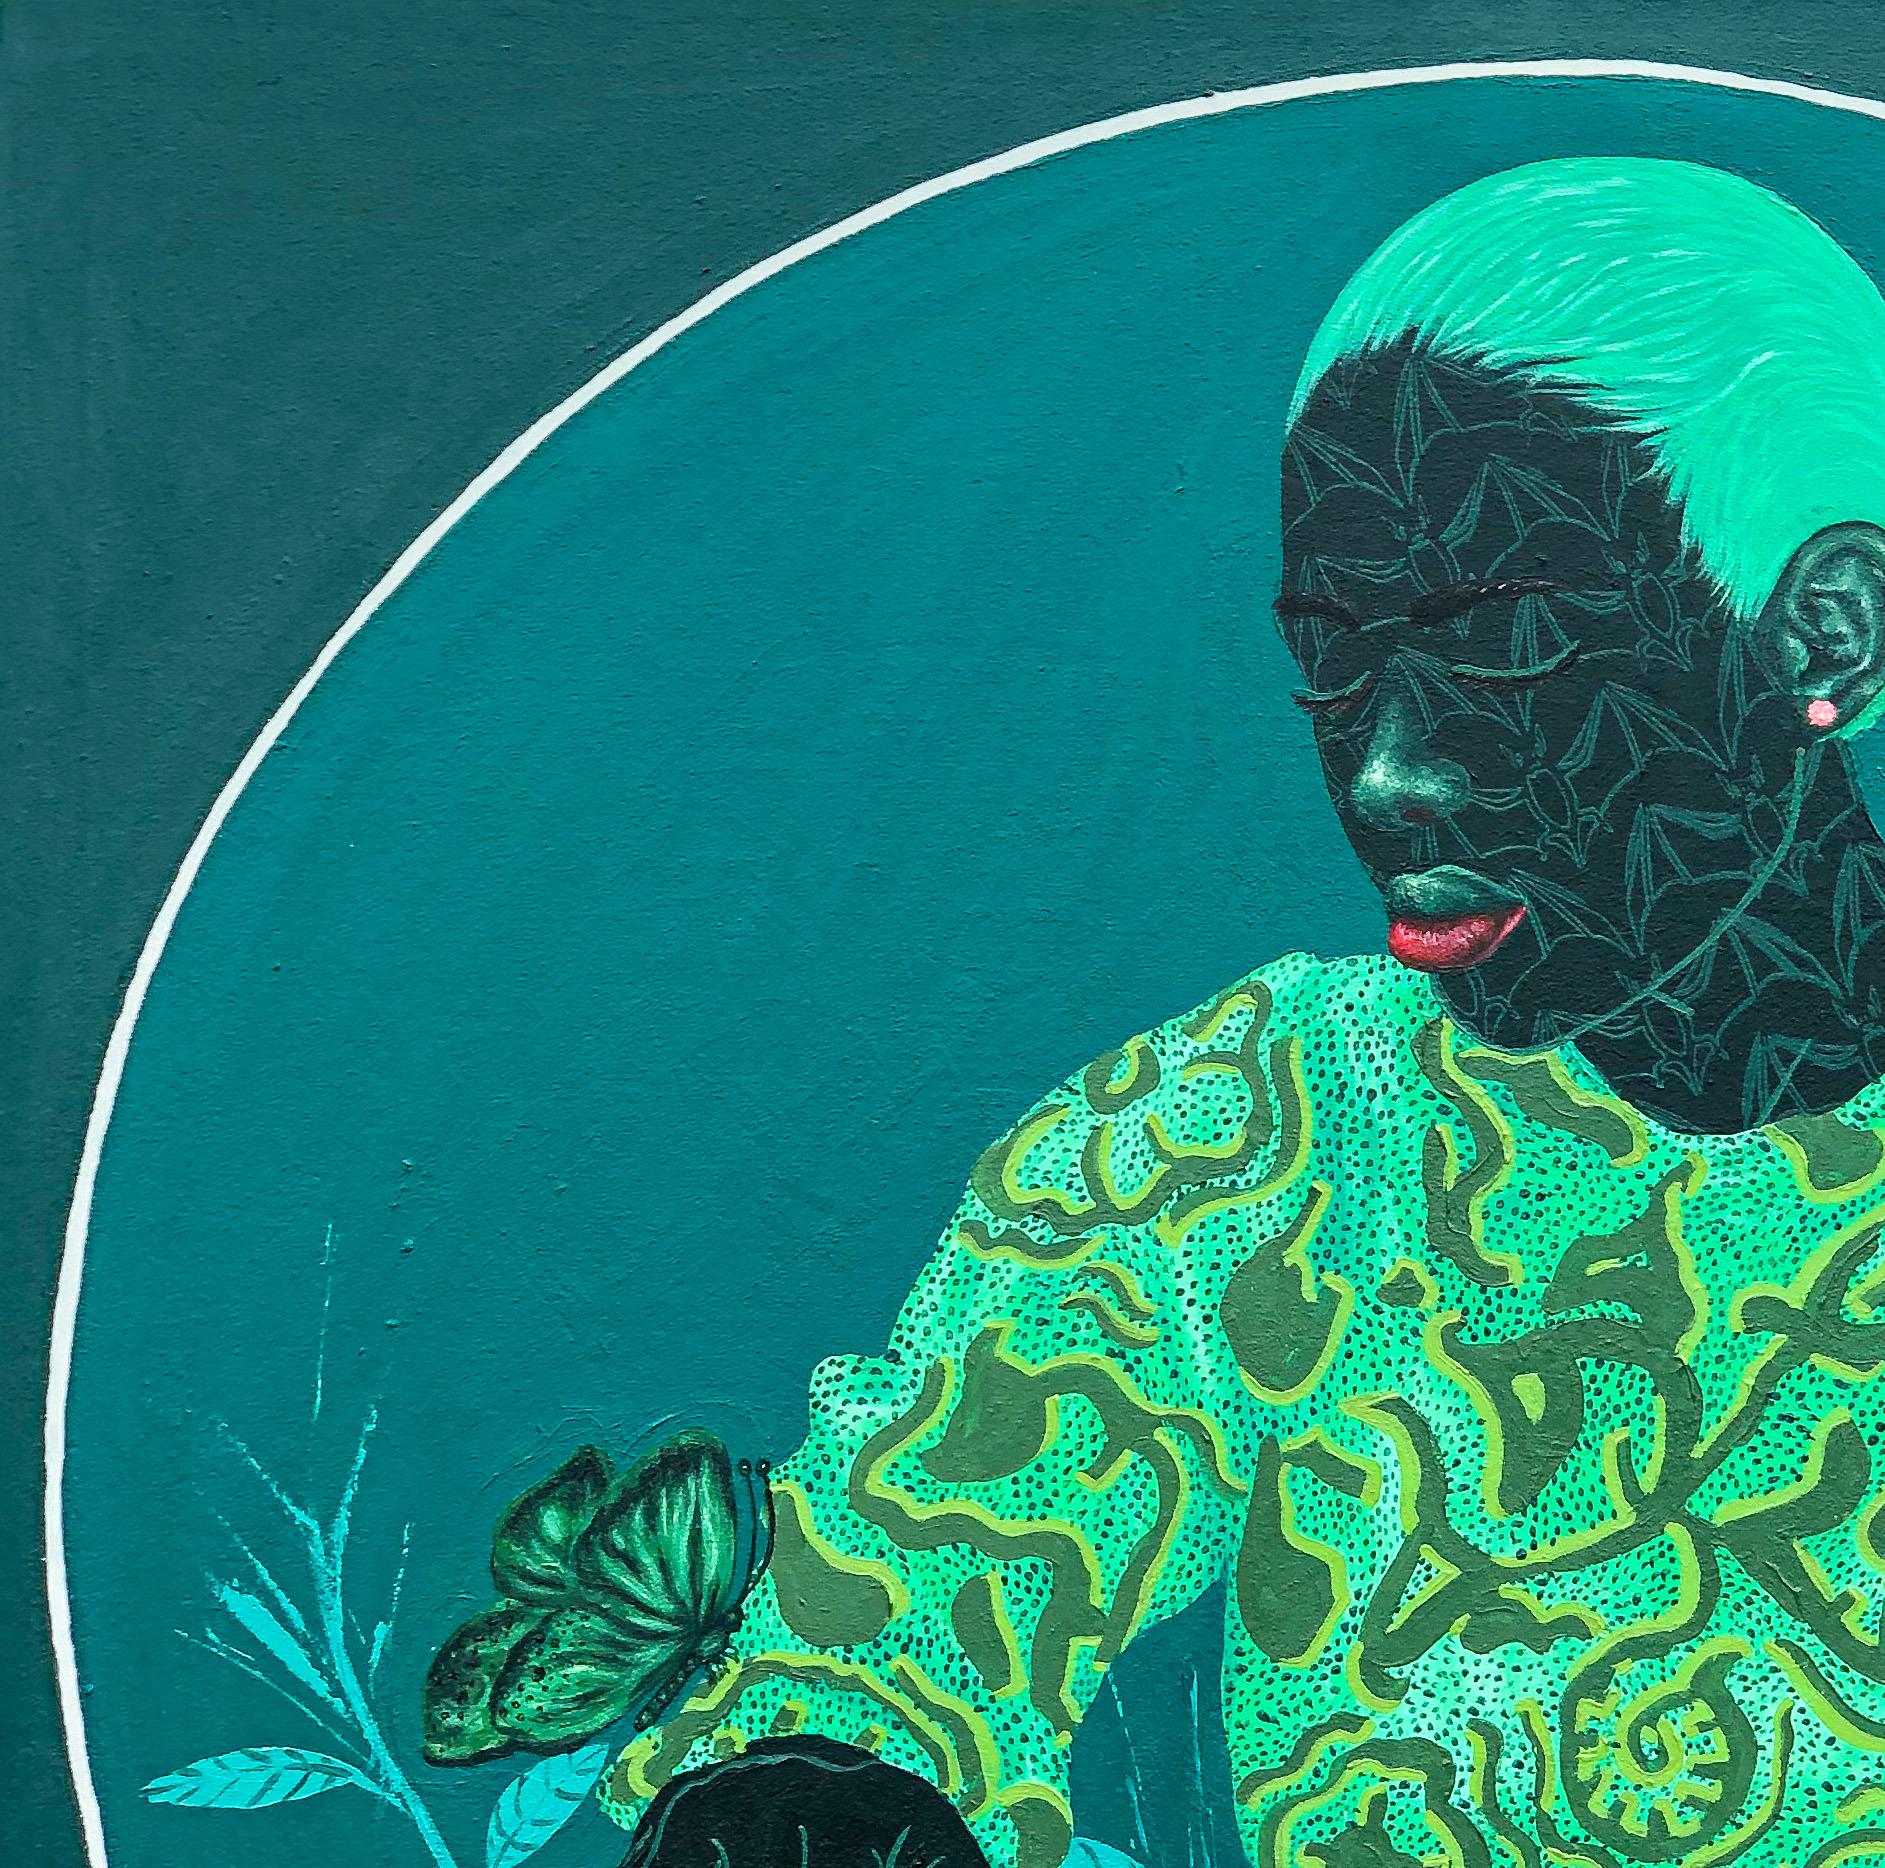 Veränderung und Wachstum 2 – Painting von Oluwafemi Afolabi